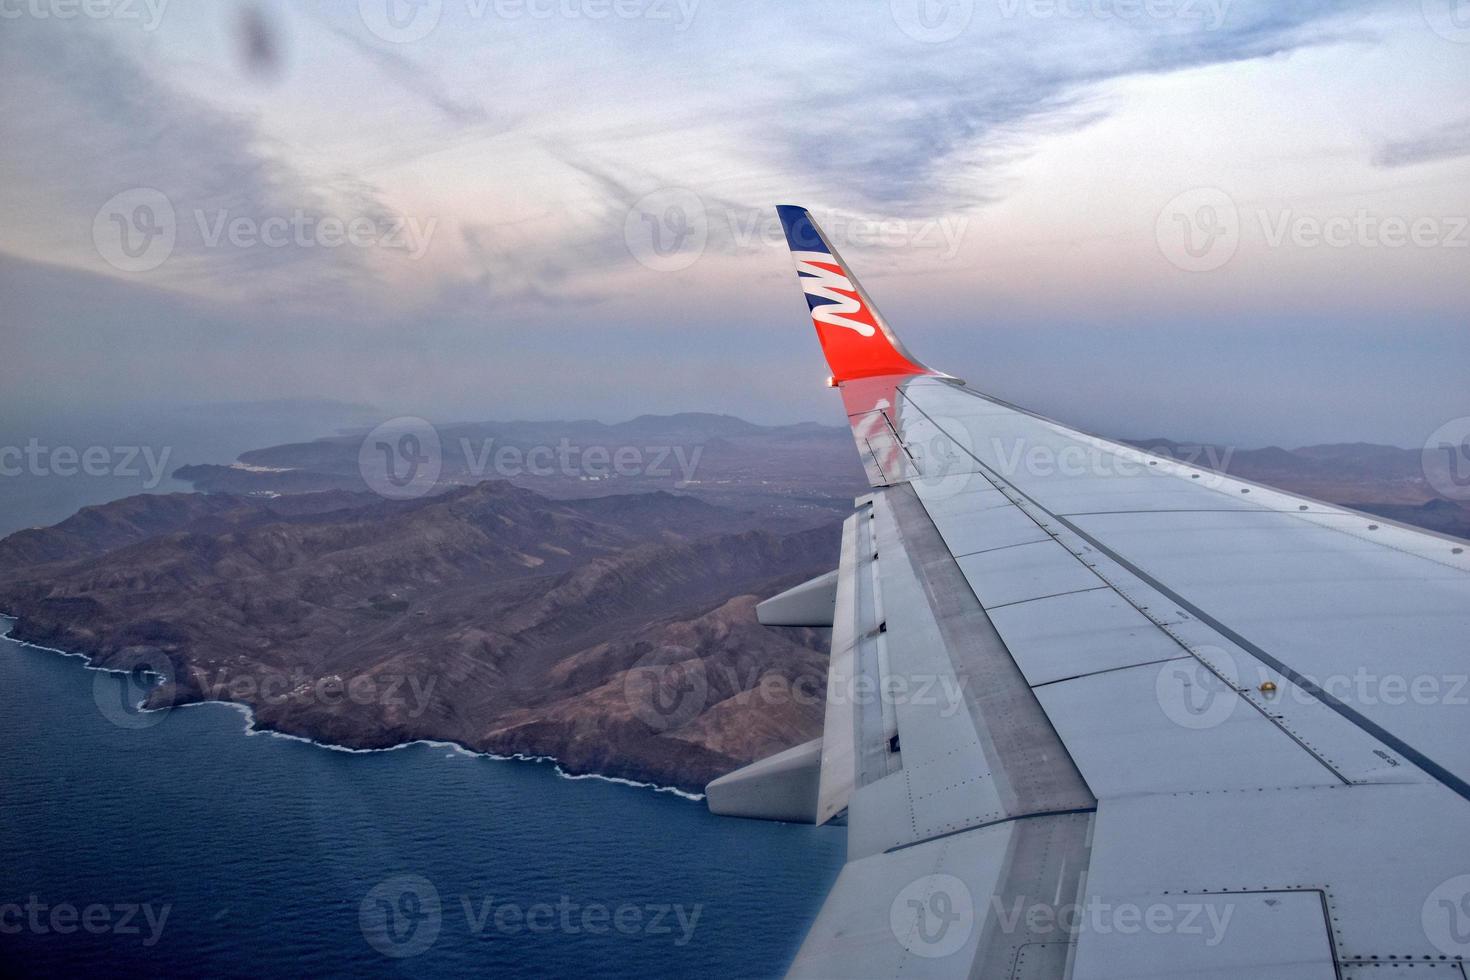 Aussicht von das Flugzeug Fenster auf das Landschaft von Kanarienvogel Insel fuerteventura im Spanien foto